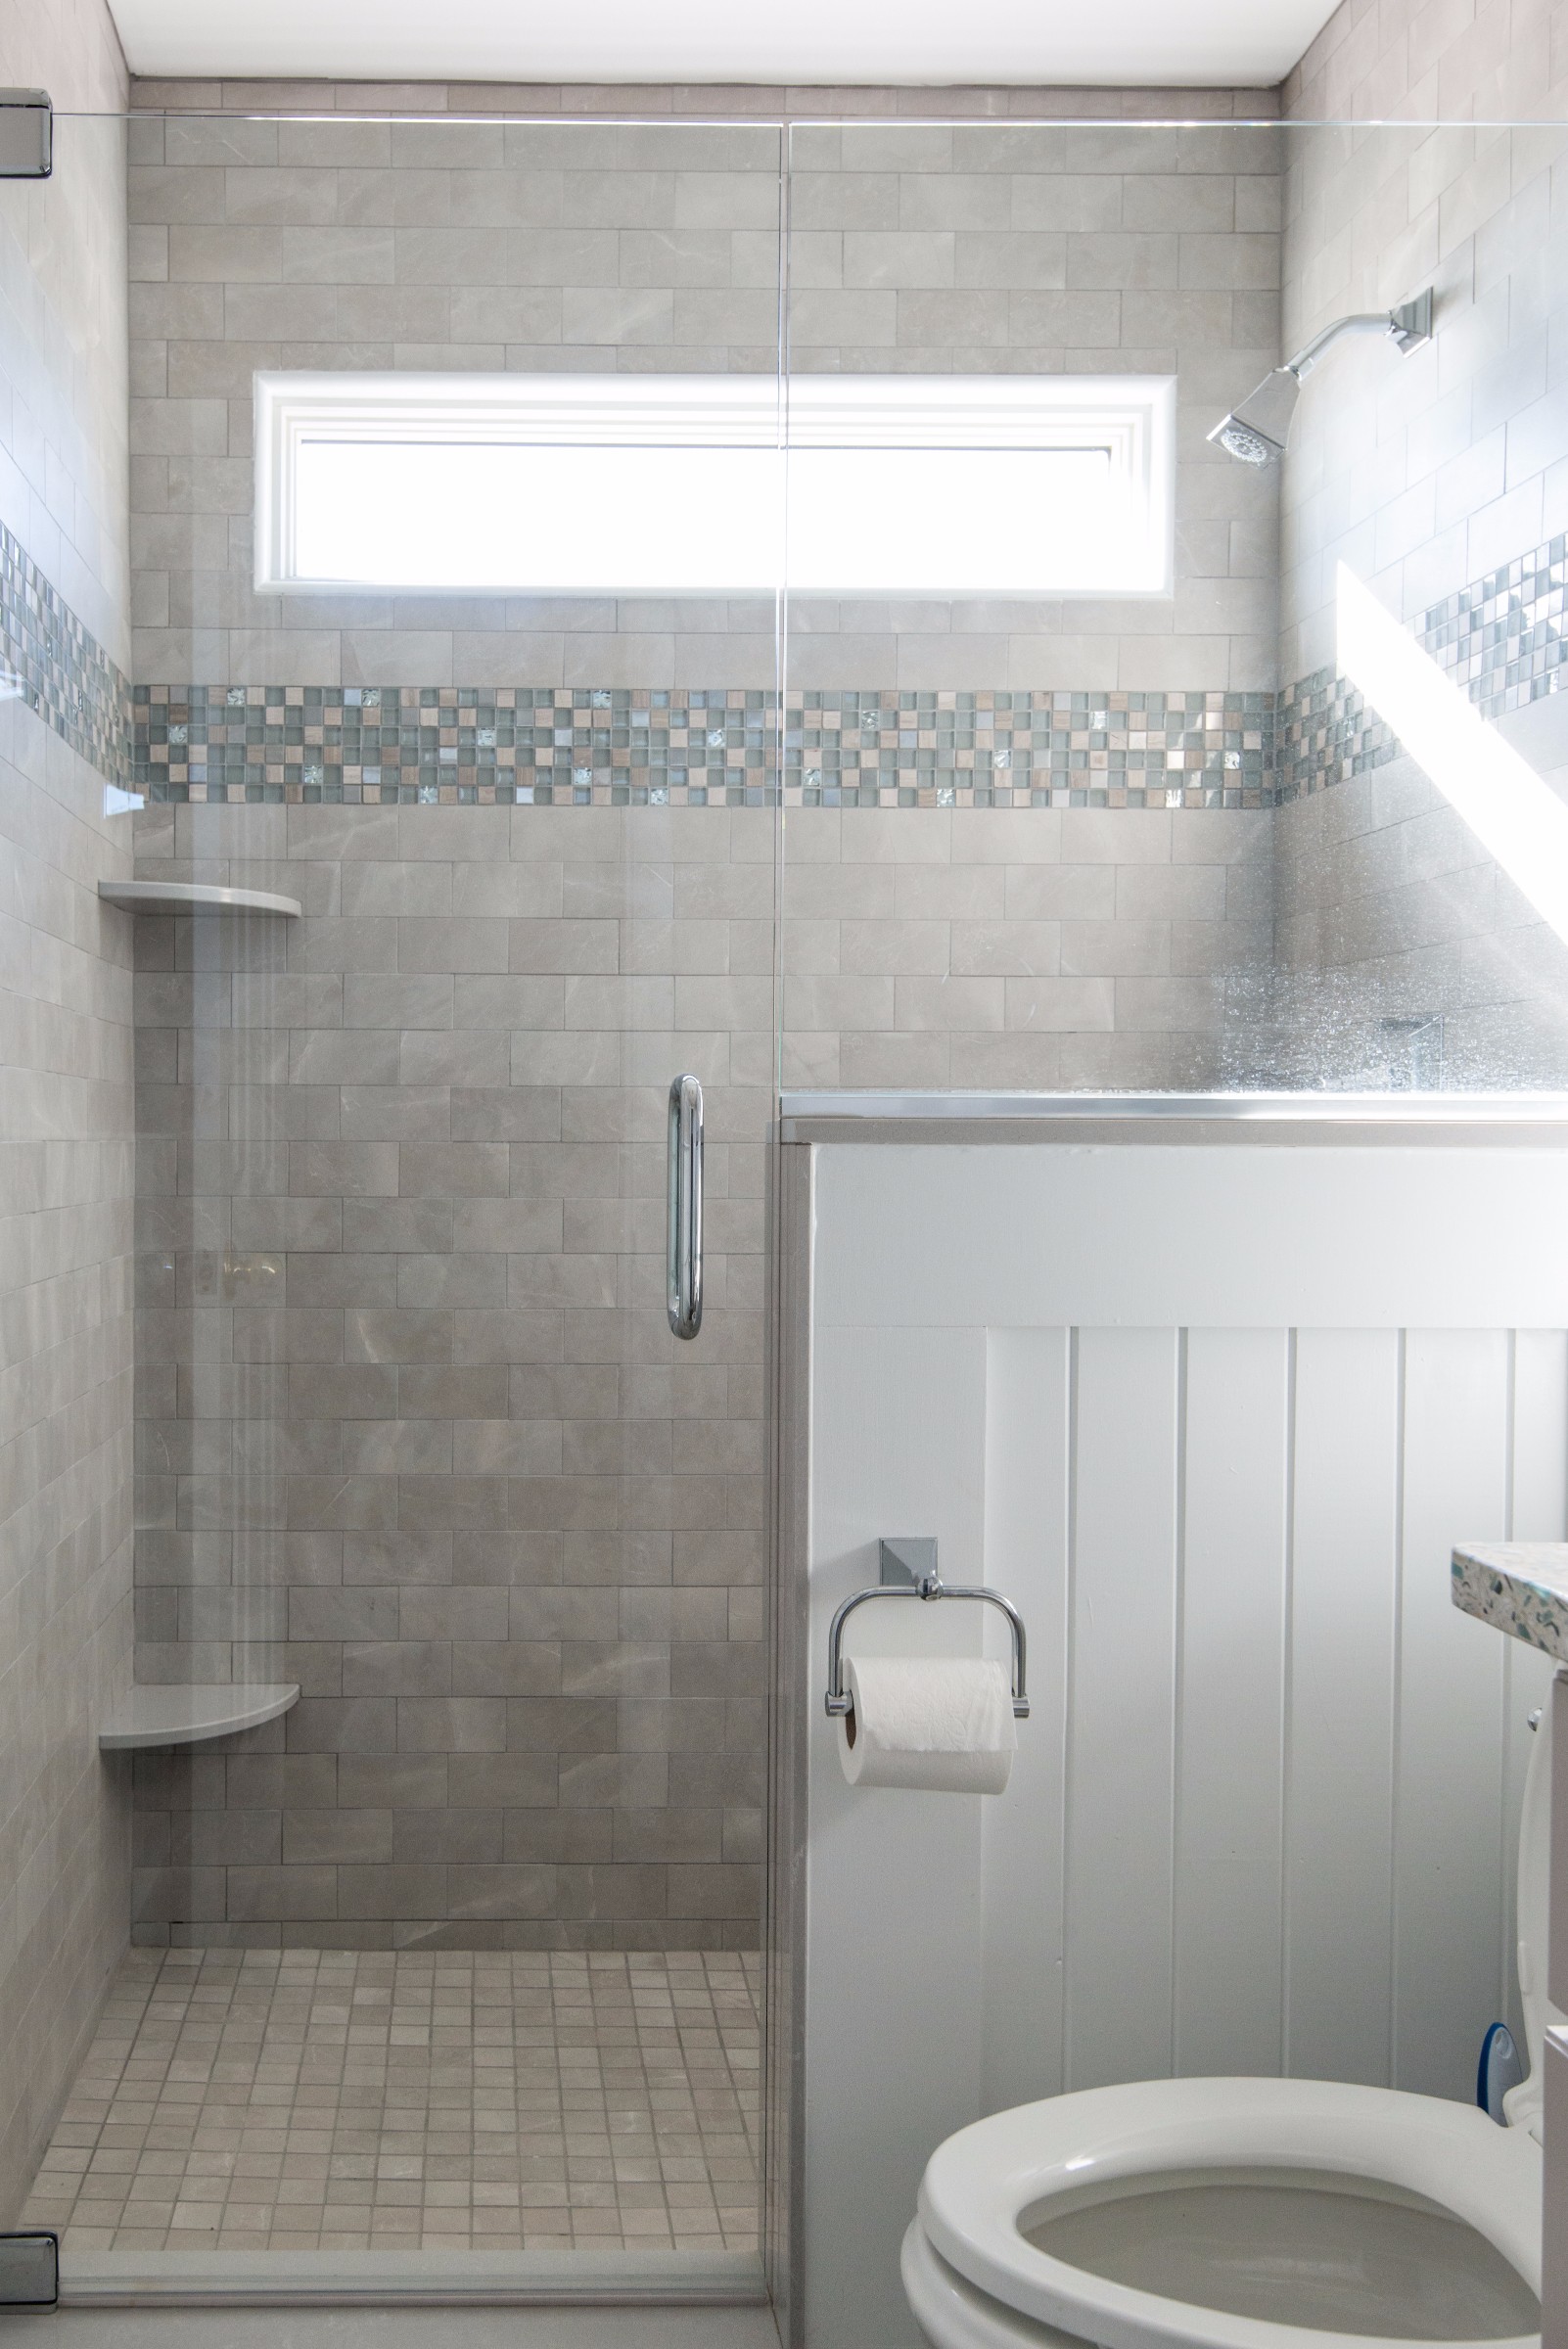 Bathroom Remodel in Kings Grant, Fenwick Island DE with Frameless Glass Door, Nordic Grey Corner Shelves and Square Floor Tiles